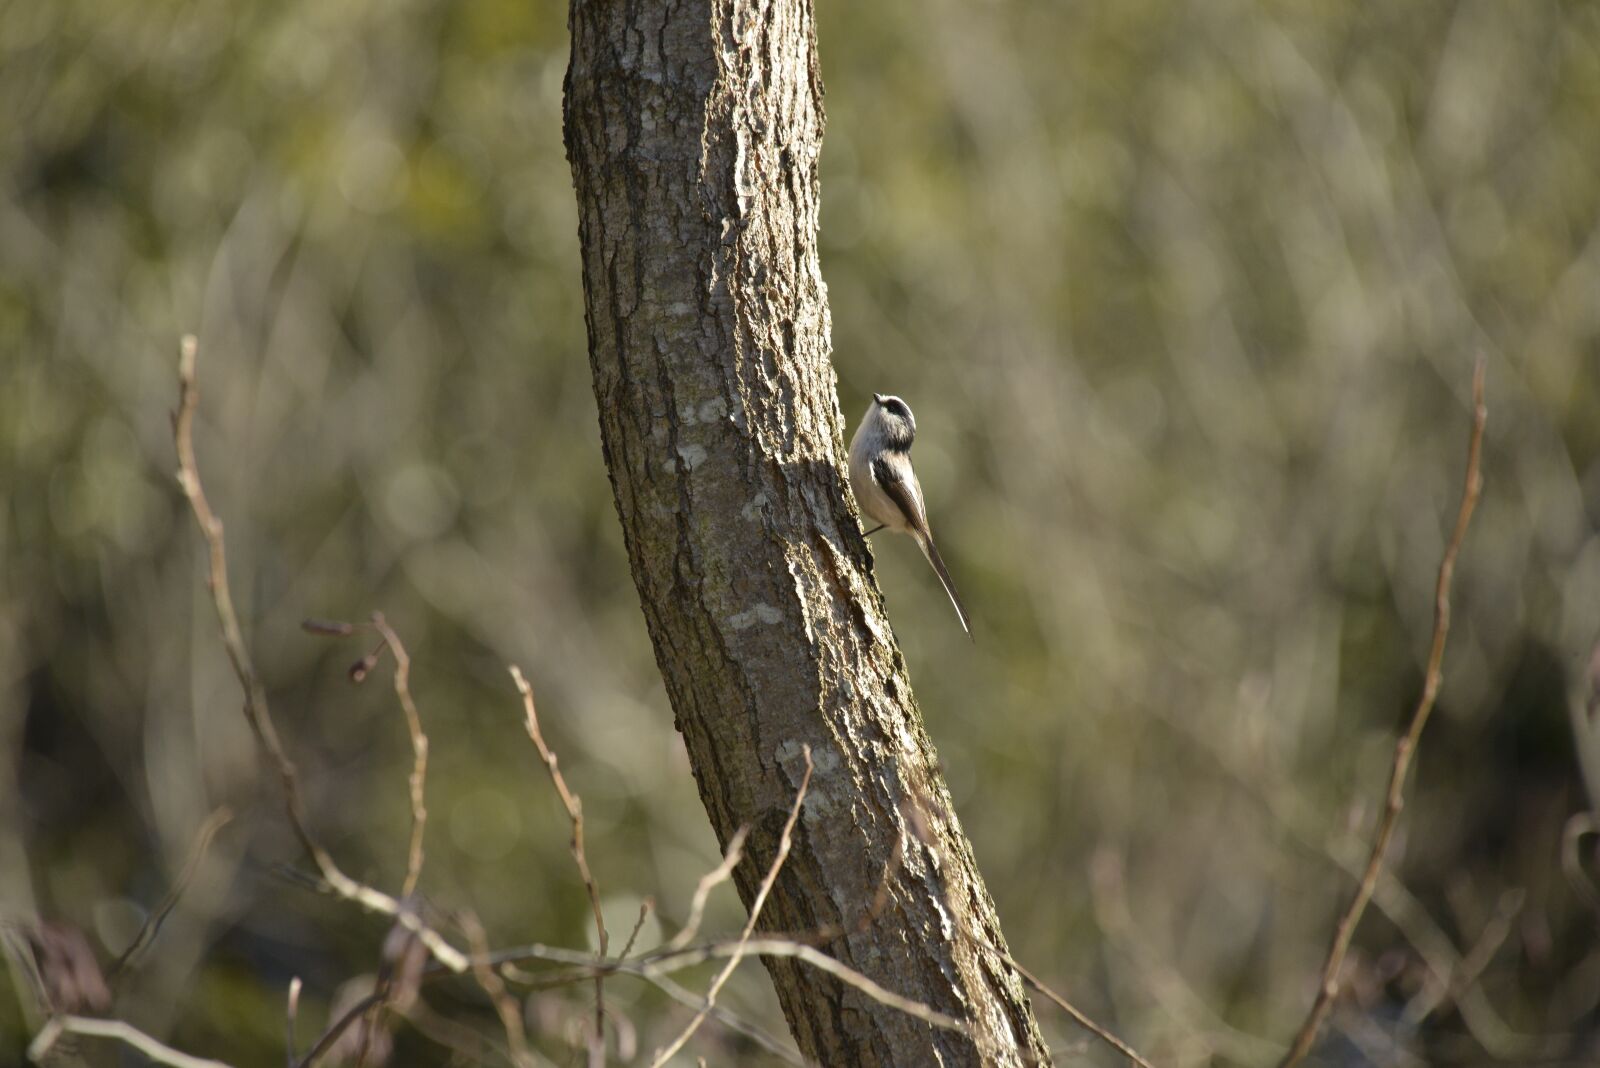 Nikon D800 sample photo. Bird, wild animals, natural photography